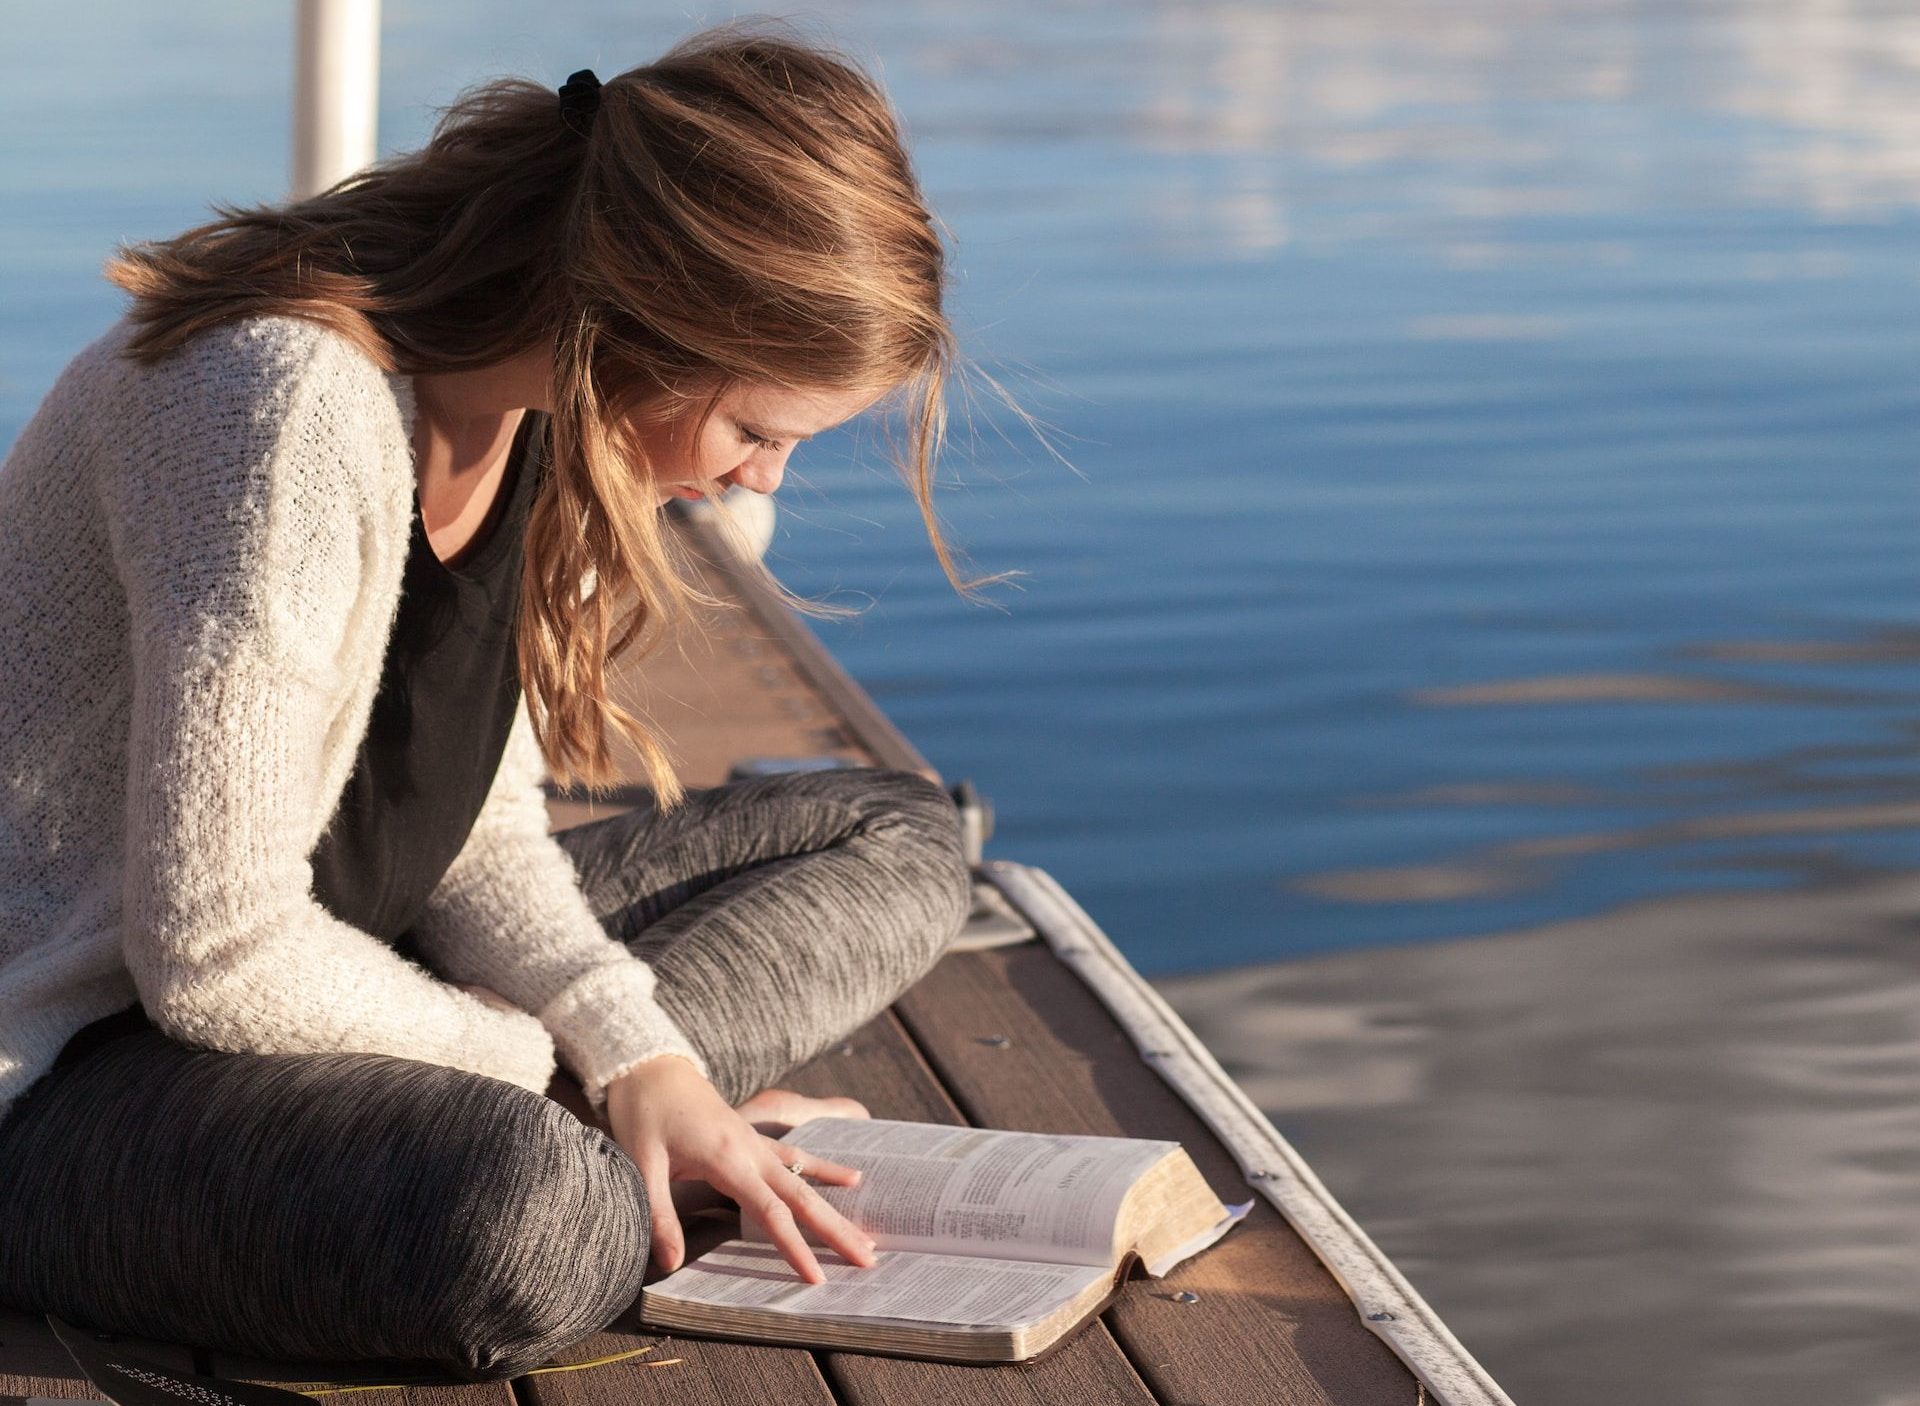 jeune femme lisant la Bible sur un ponton (recadrée) - Bethany Laird sur https://unsplash.com/fr/photos/photo-dune-femme-lisant-un-livre-pres-dun-plan-deau-vGReyBvIX-o